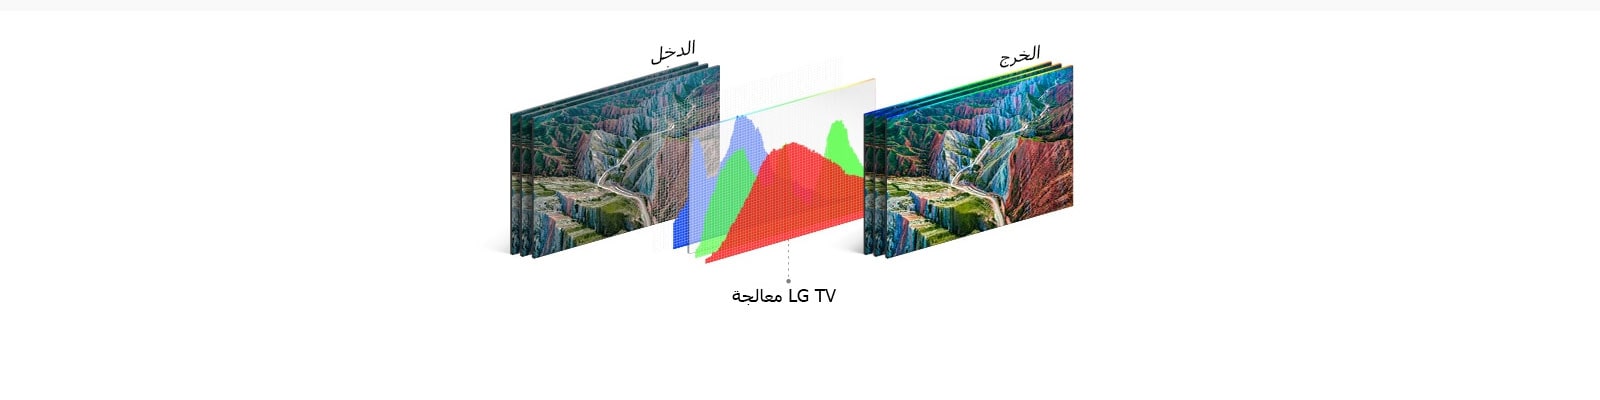 تظهر العملية الهيكلية لـ HDR 10 Pro صورة الإخراج بعد معالجة LG TV للصورة المدخلة. 